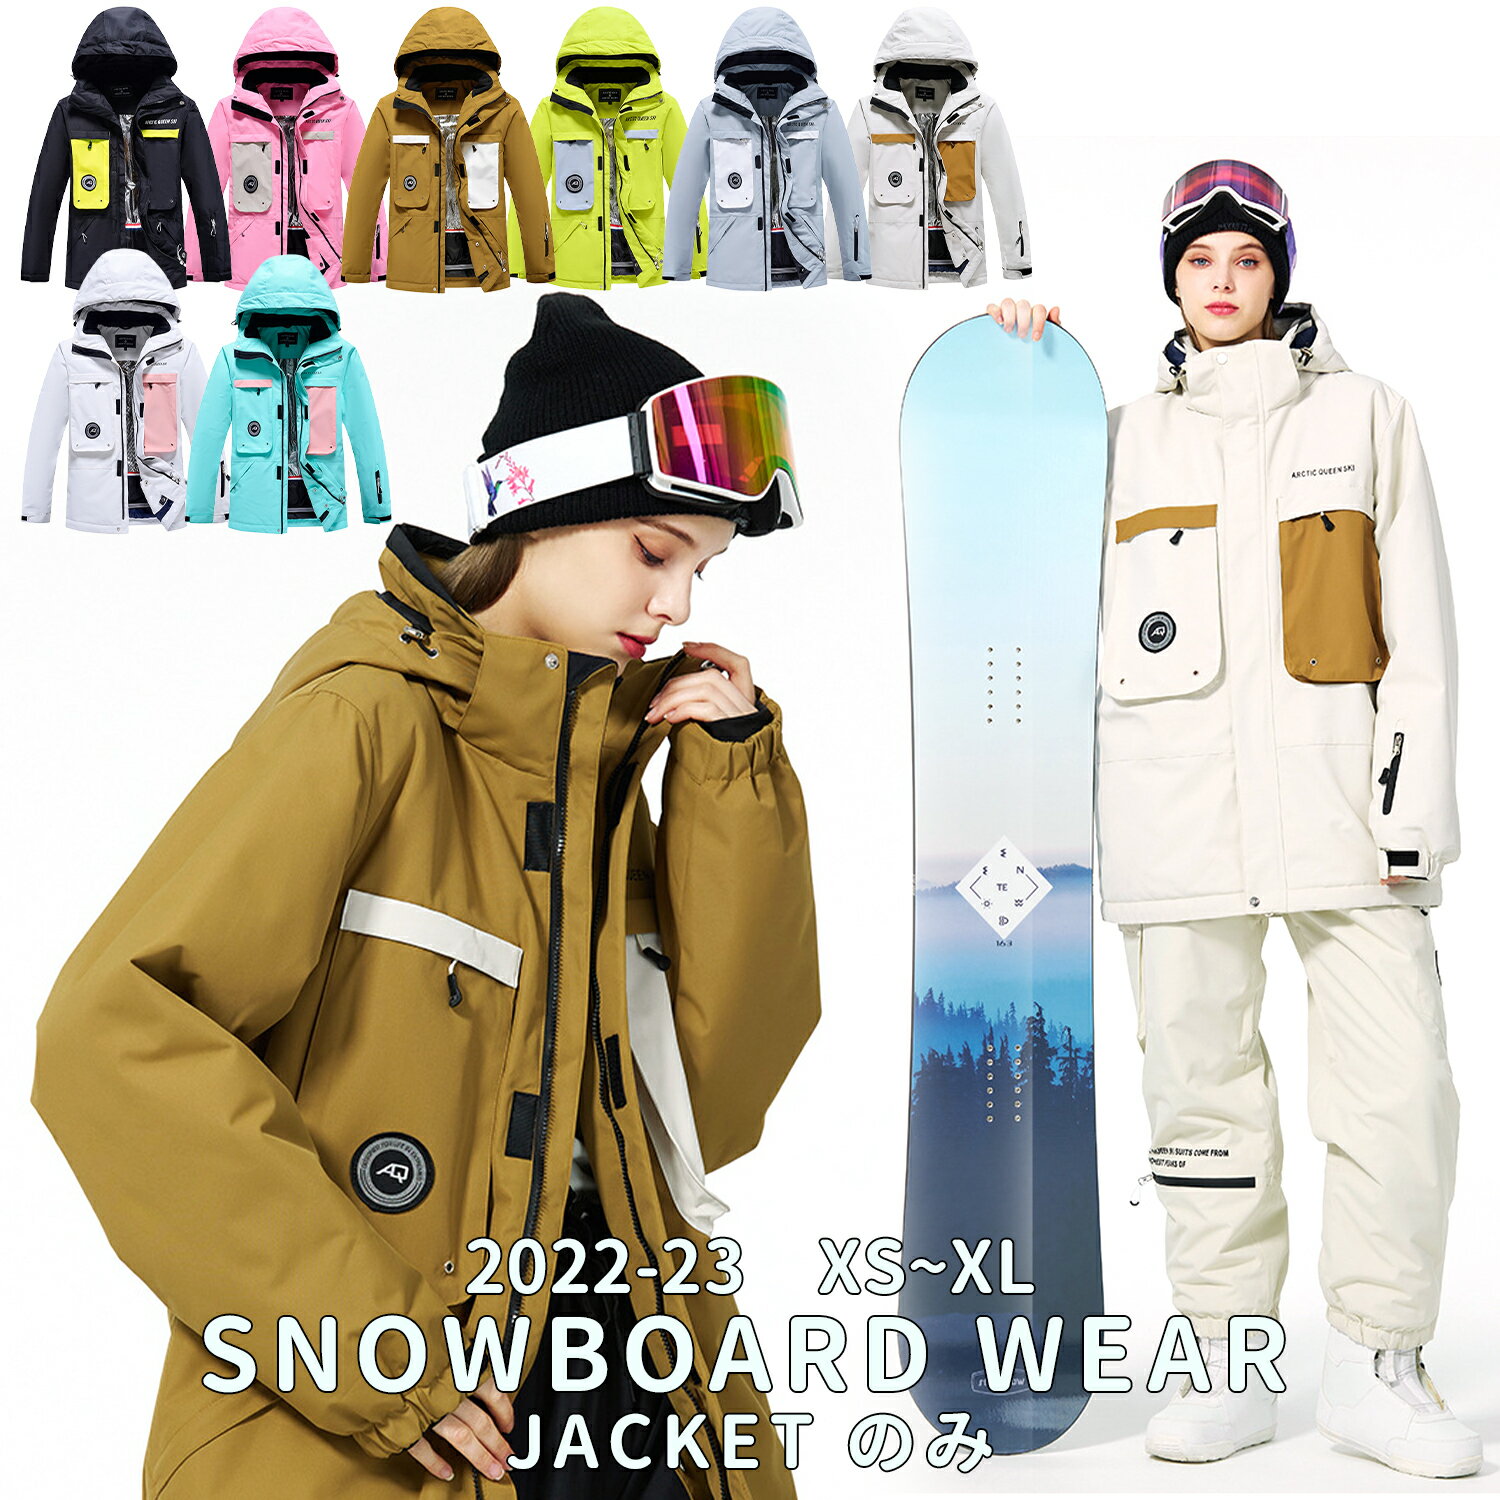 スノーボードウェア スキーウェア メンズ レディース ボードウェア スノボウェア ウェア スノーボード スキー スノボーウェア スノーウェア ジャケット 大きい ウエア アノラック風 撥水 防水 防寒 保温 雪遊び 防風 全8色 送料無料 2022 2023